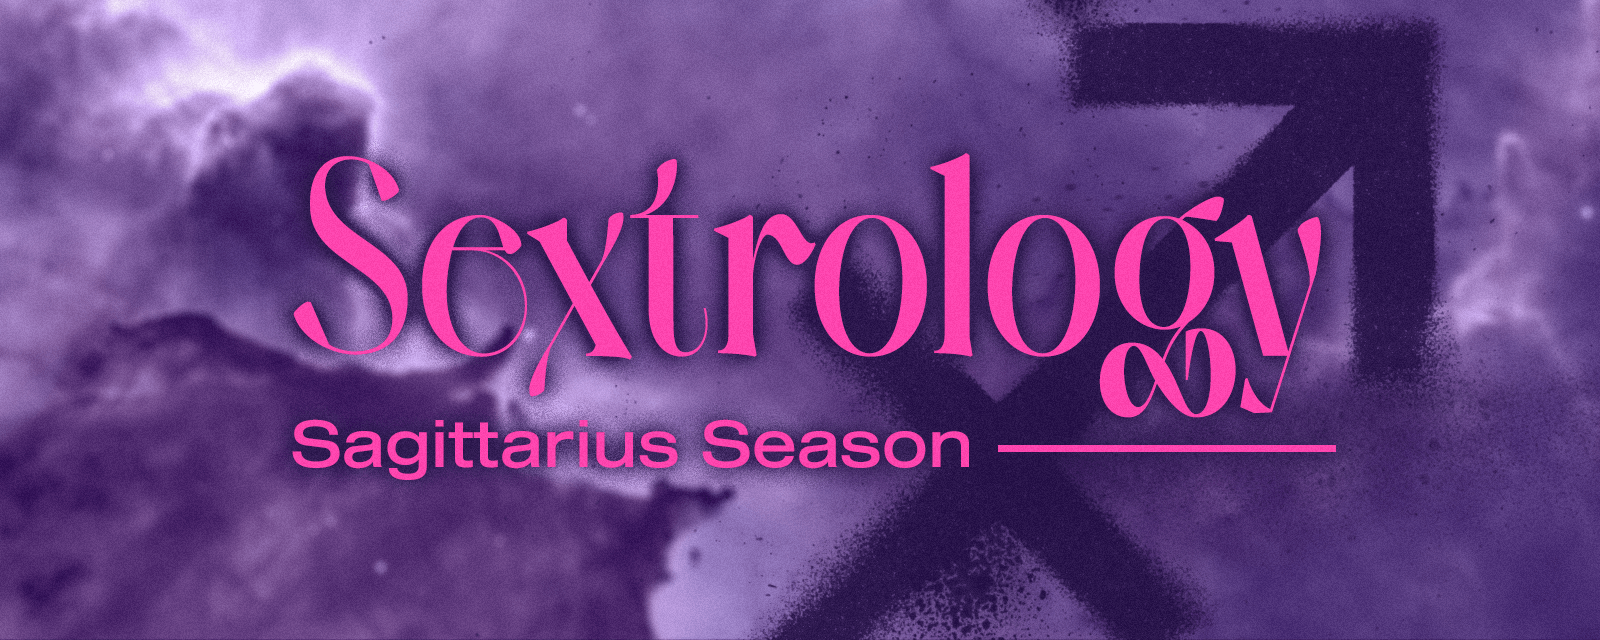 Sextrology, dein erotisches Horoskop Sagittarius Season